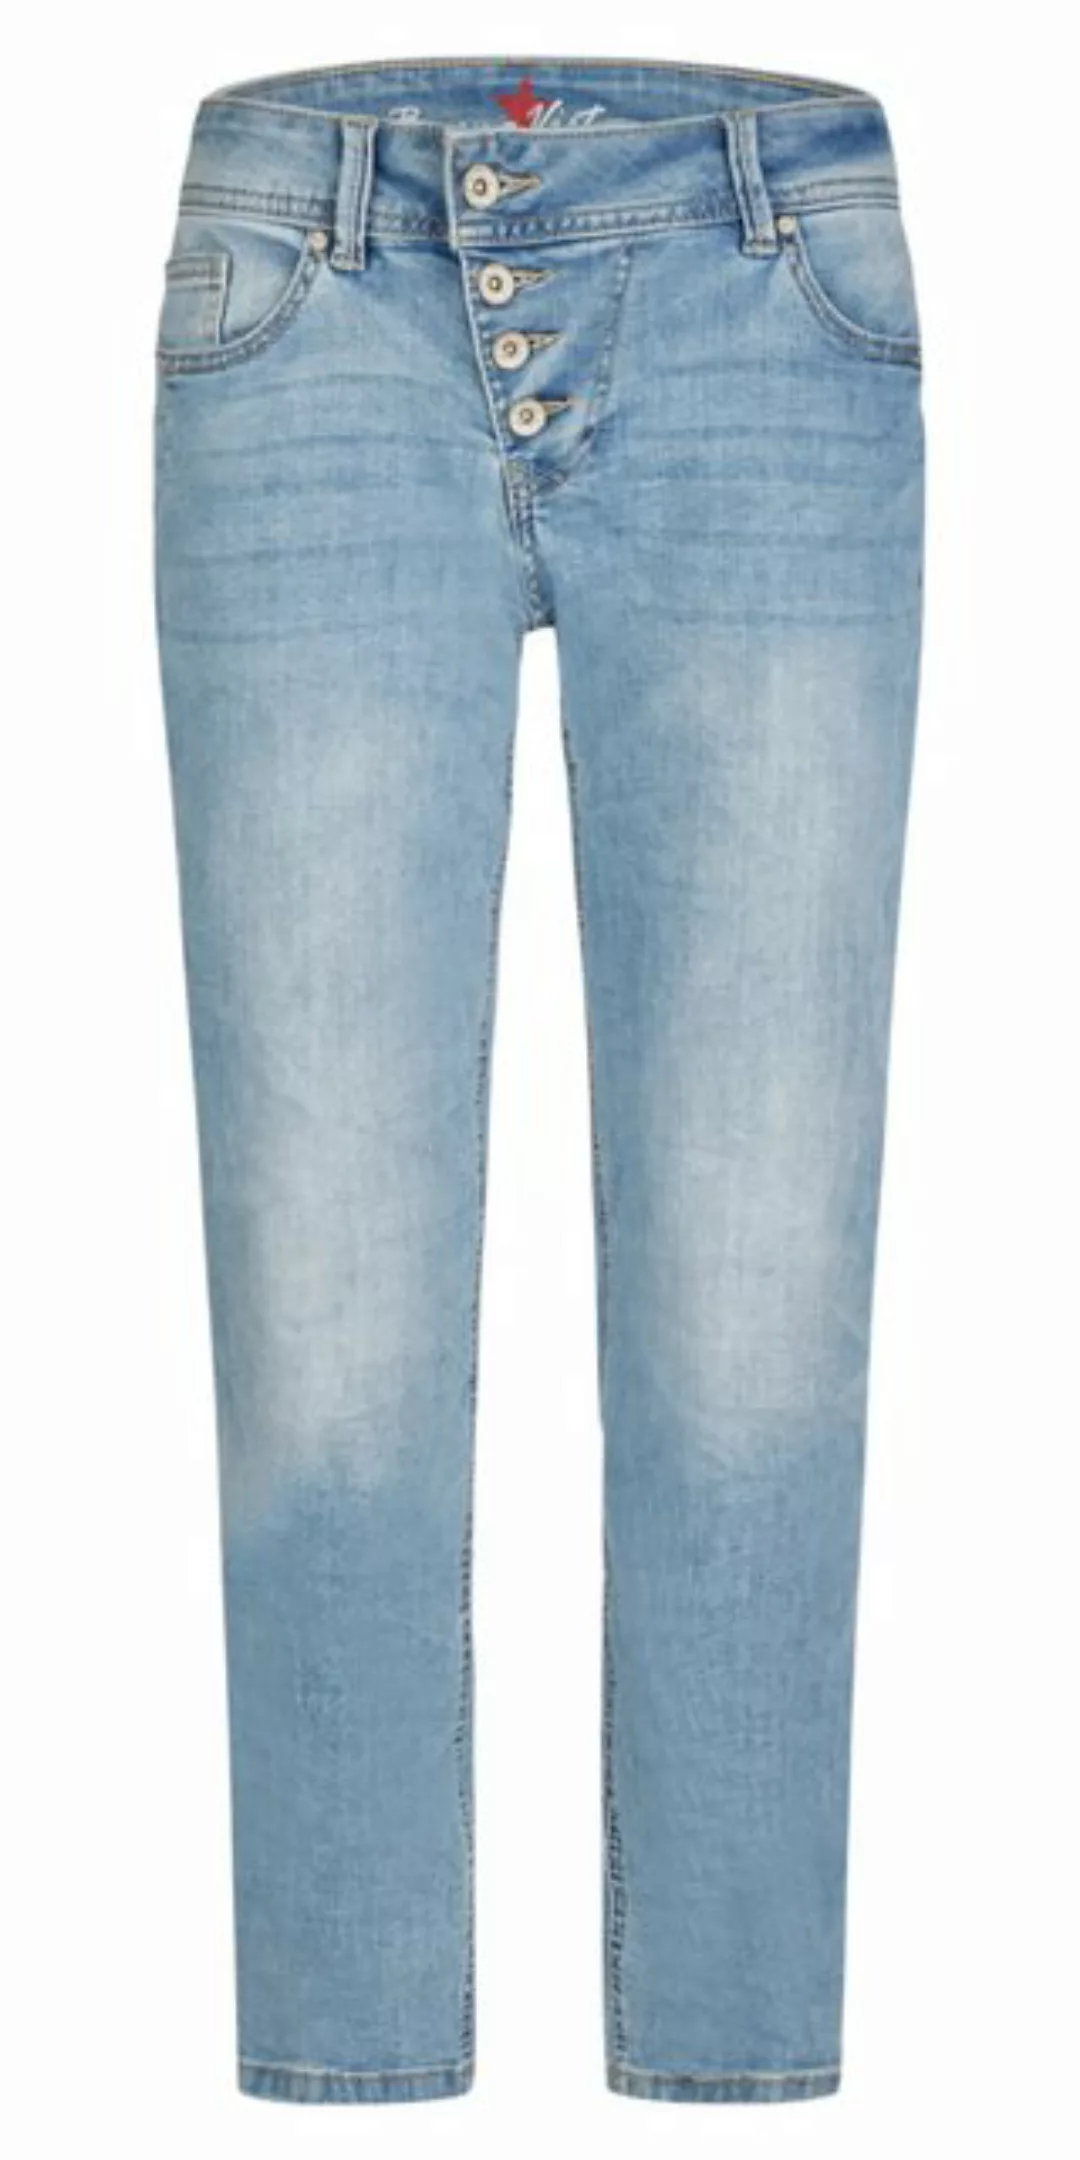 Buena Vista 7/8-Jeans günstig online kaufen